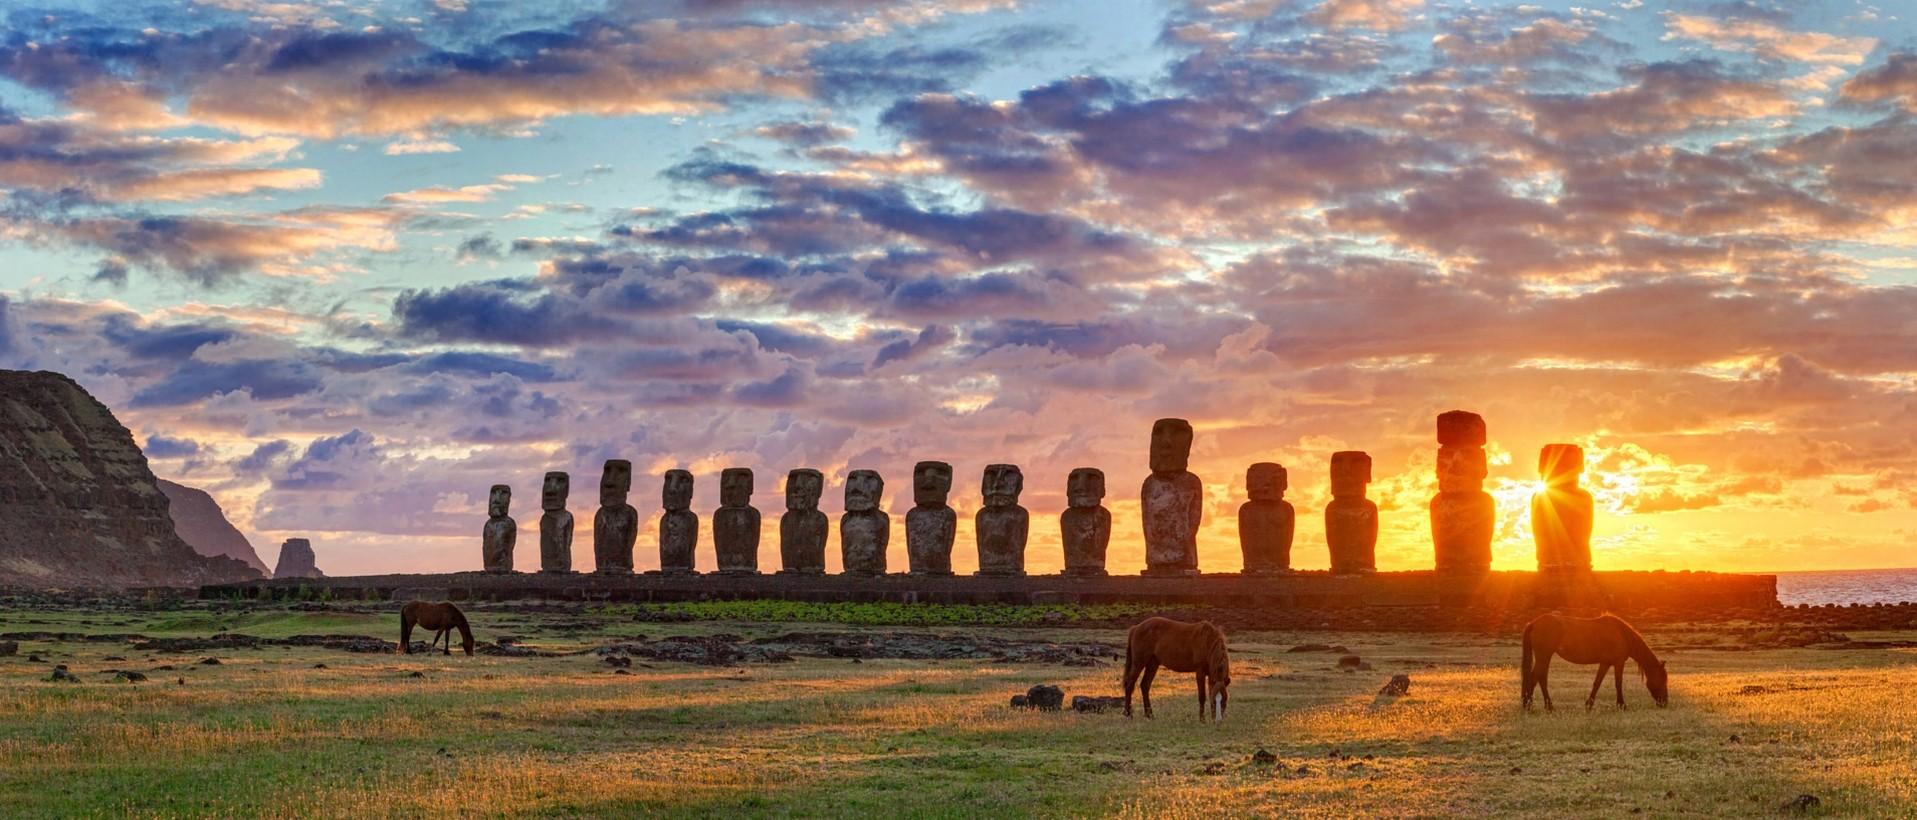 -font-b-Beautiful-b-font-font-b-Easter-b-font-Island-Chile-sunset-Moai-statues.jpg